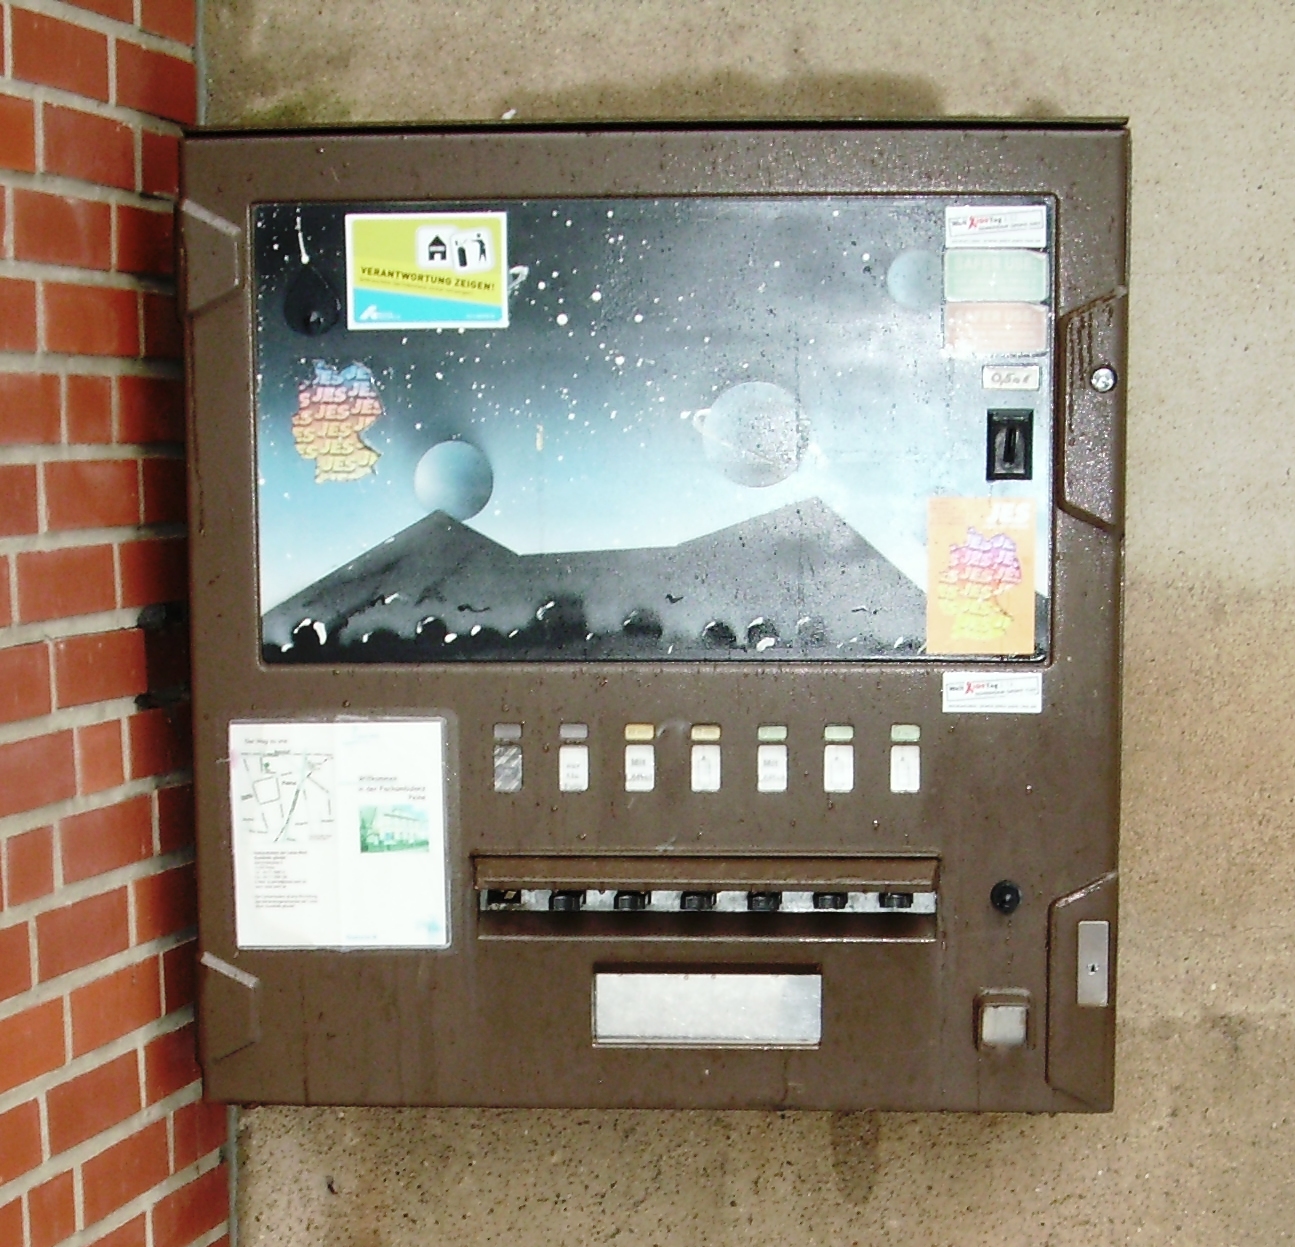 Der alte Automat, erstmalig 1996 Aufgestellt, oft repariert aber irgendwann war Schluss. Er entsprach auch nicht mehr den Anforderungen und Bedarf an alternativen Materialien zum Nichtintravenösem Konsum...